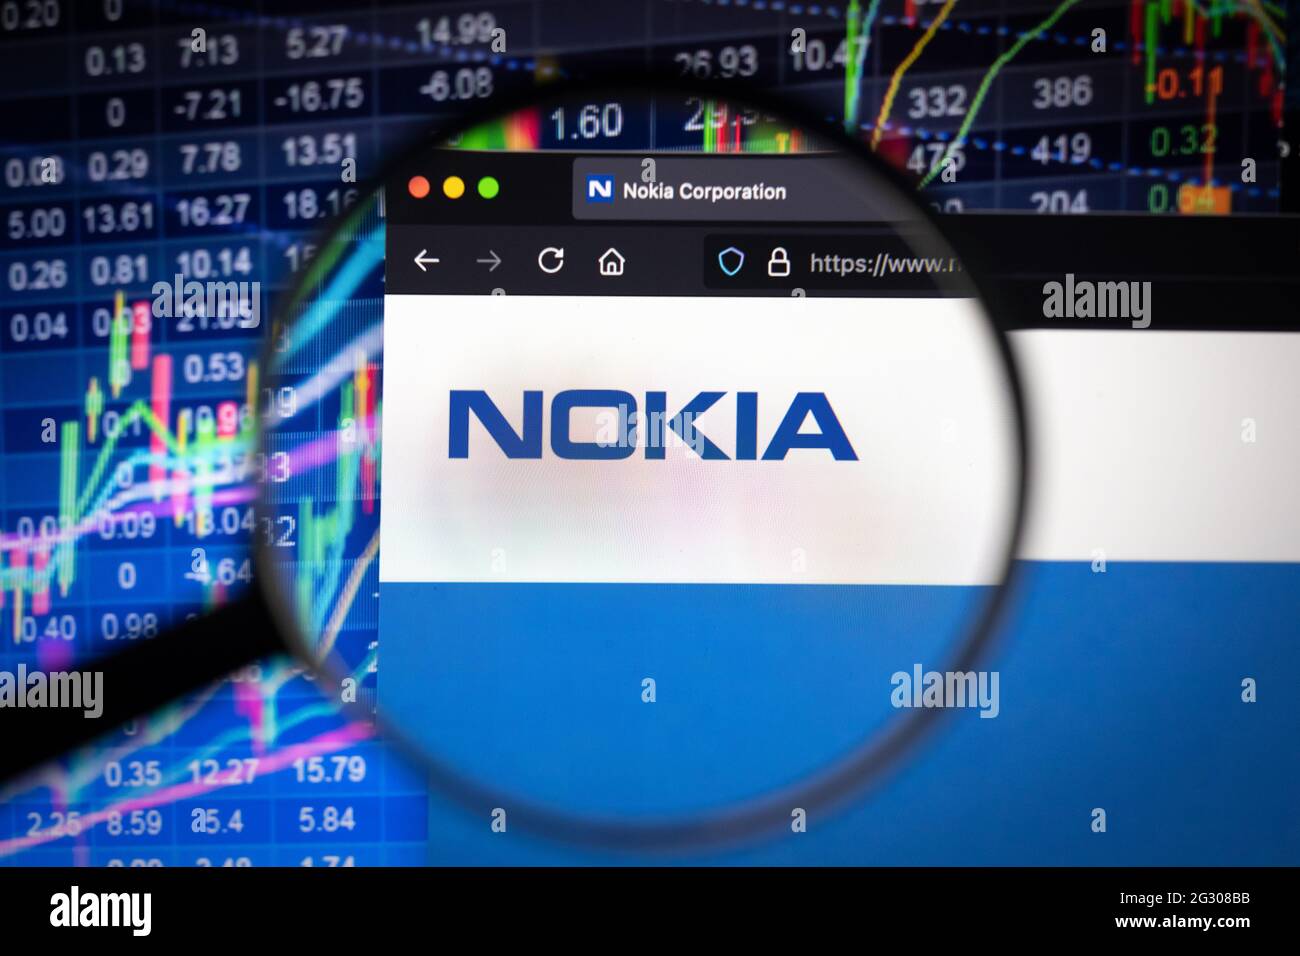 Nokia share price